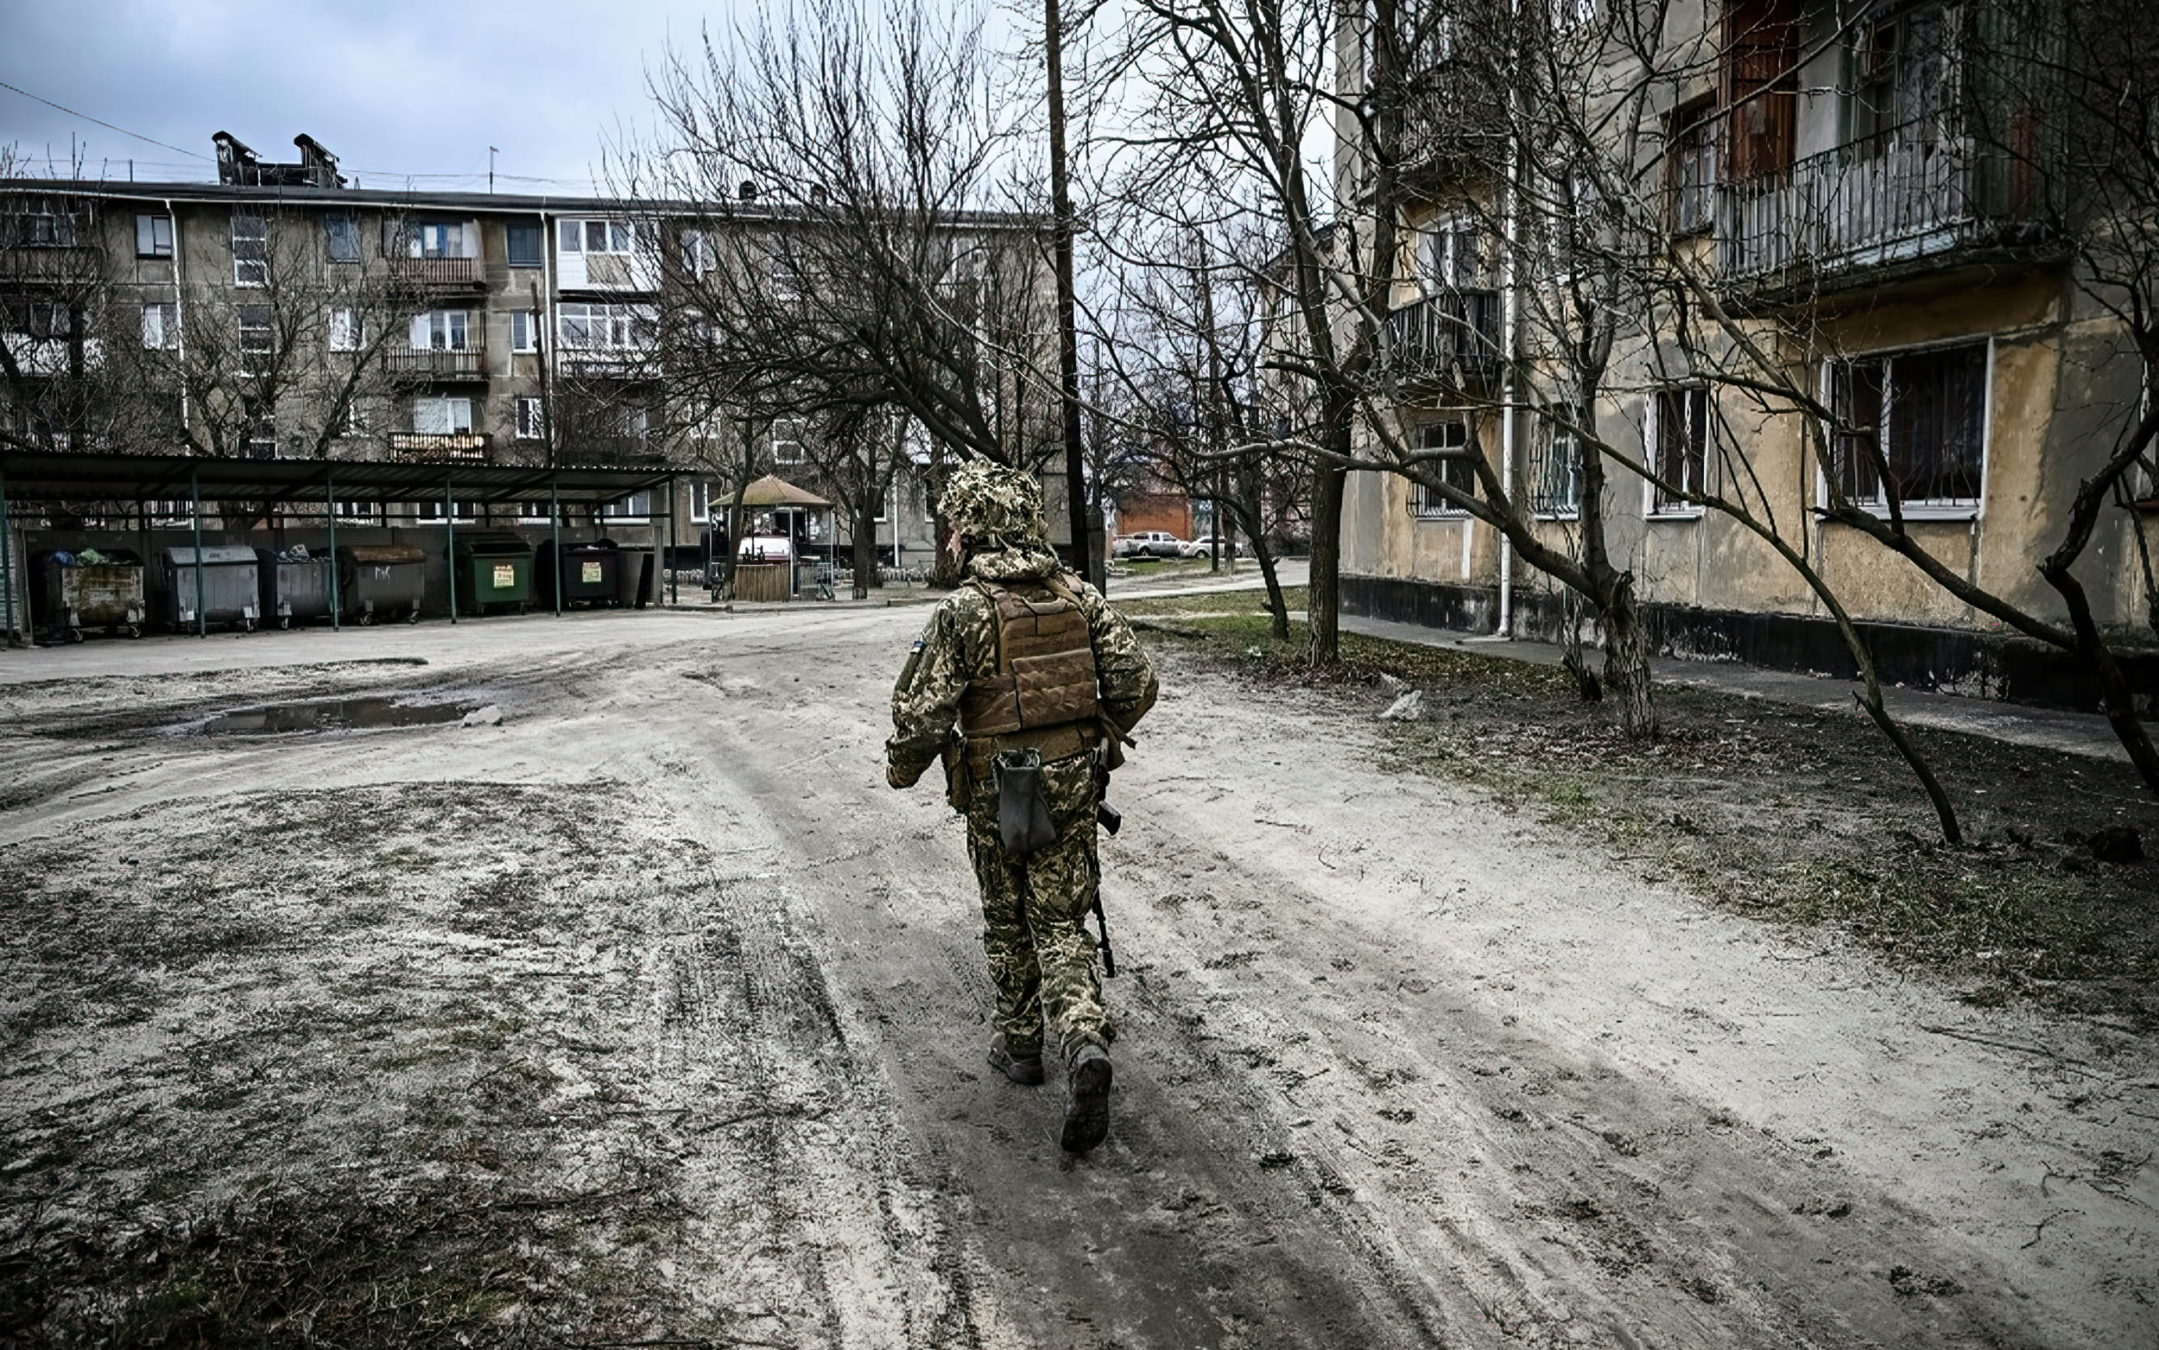 Occidente afirma que las tropas rusas están "invadiendo" Ucrania: mientras preparan sanciones